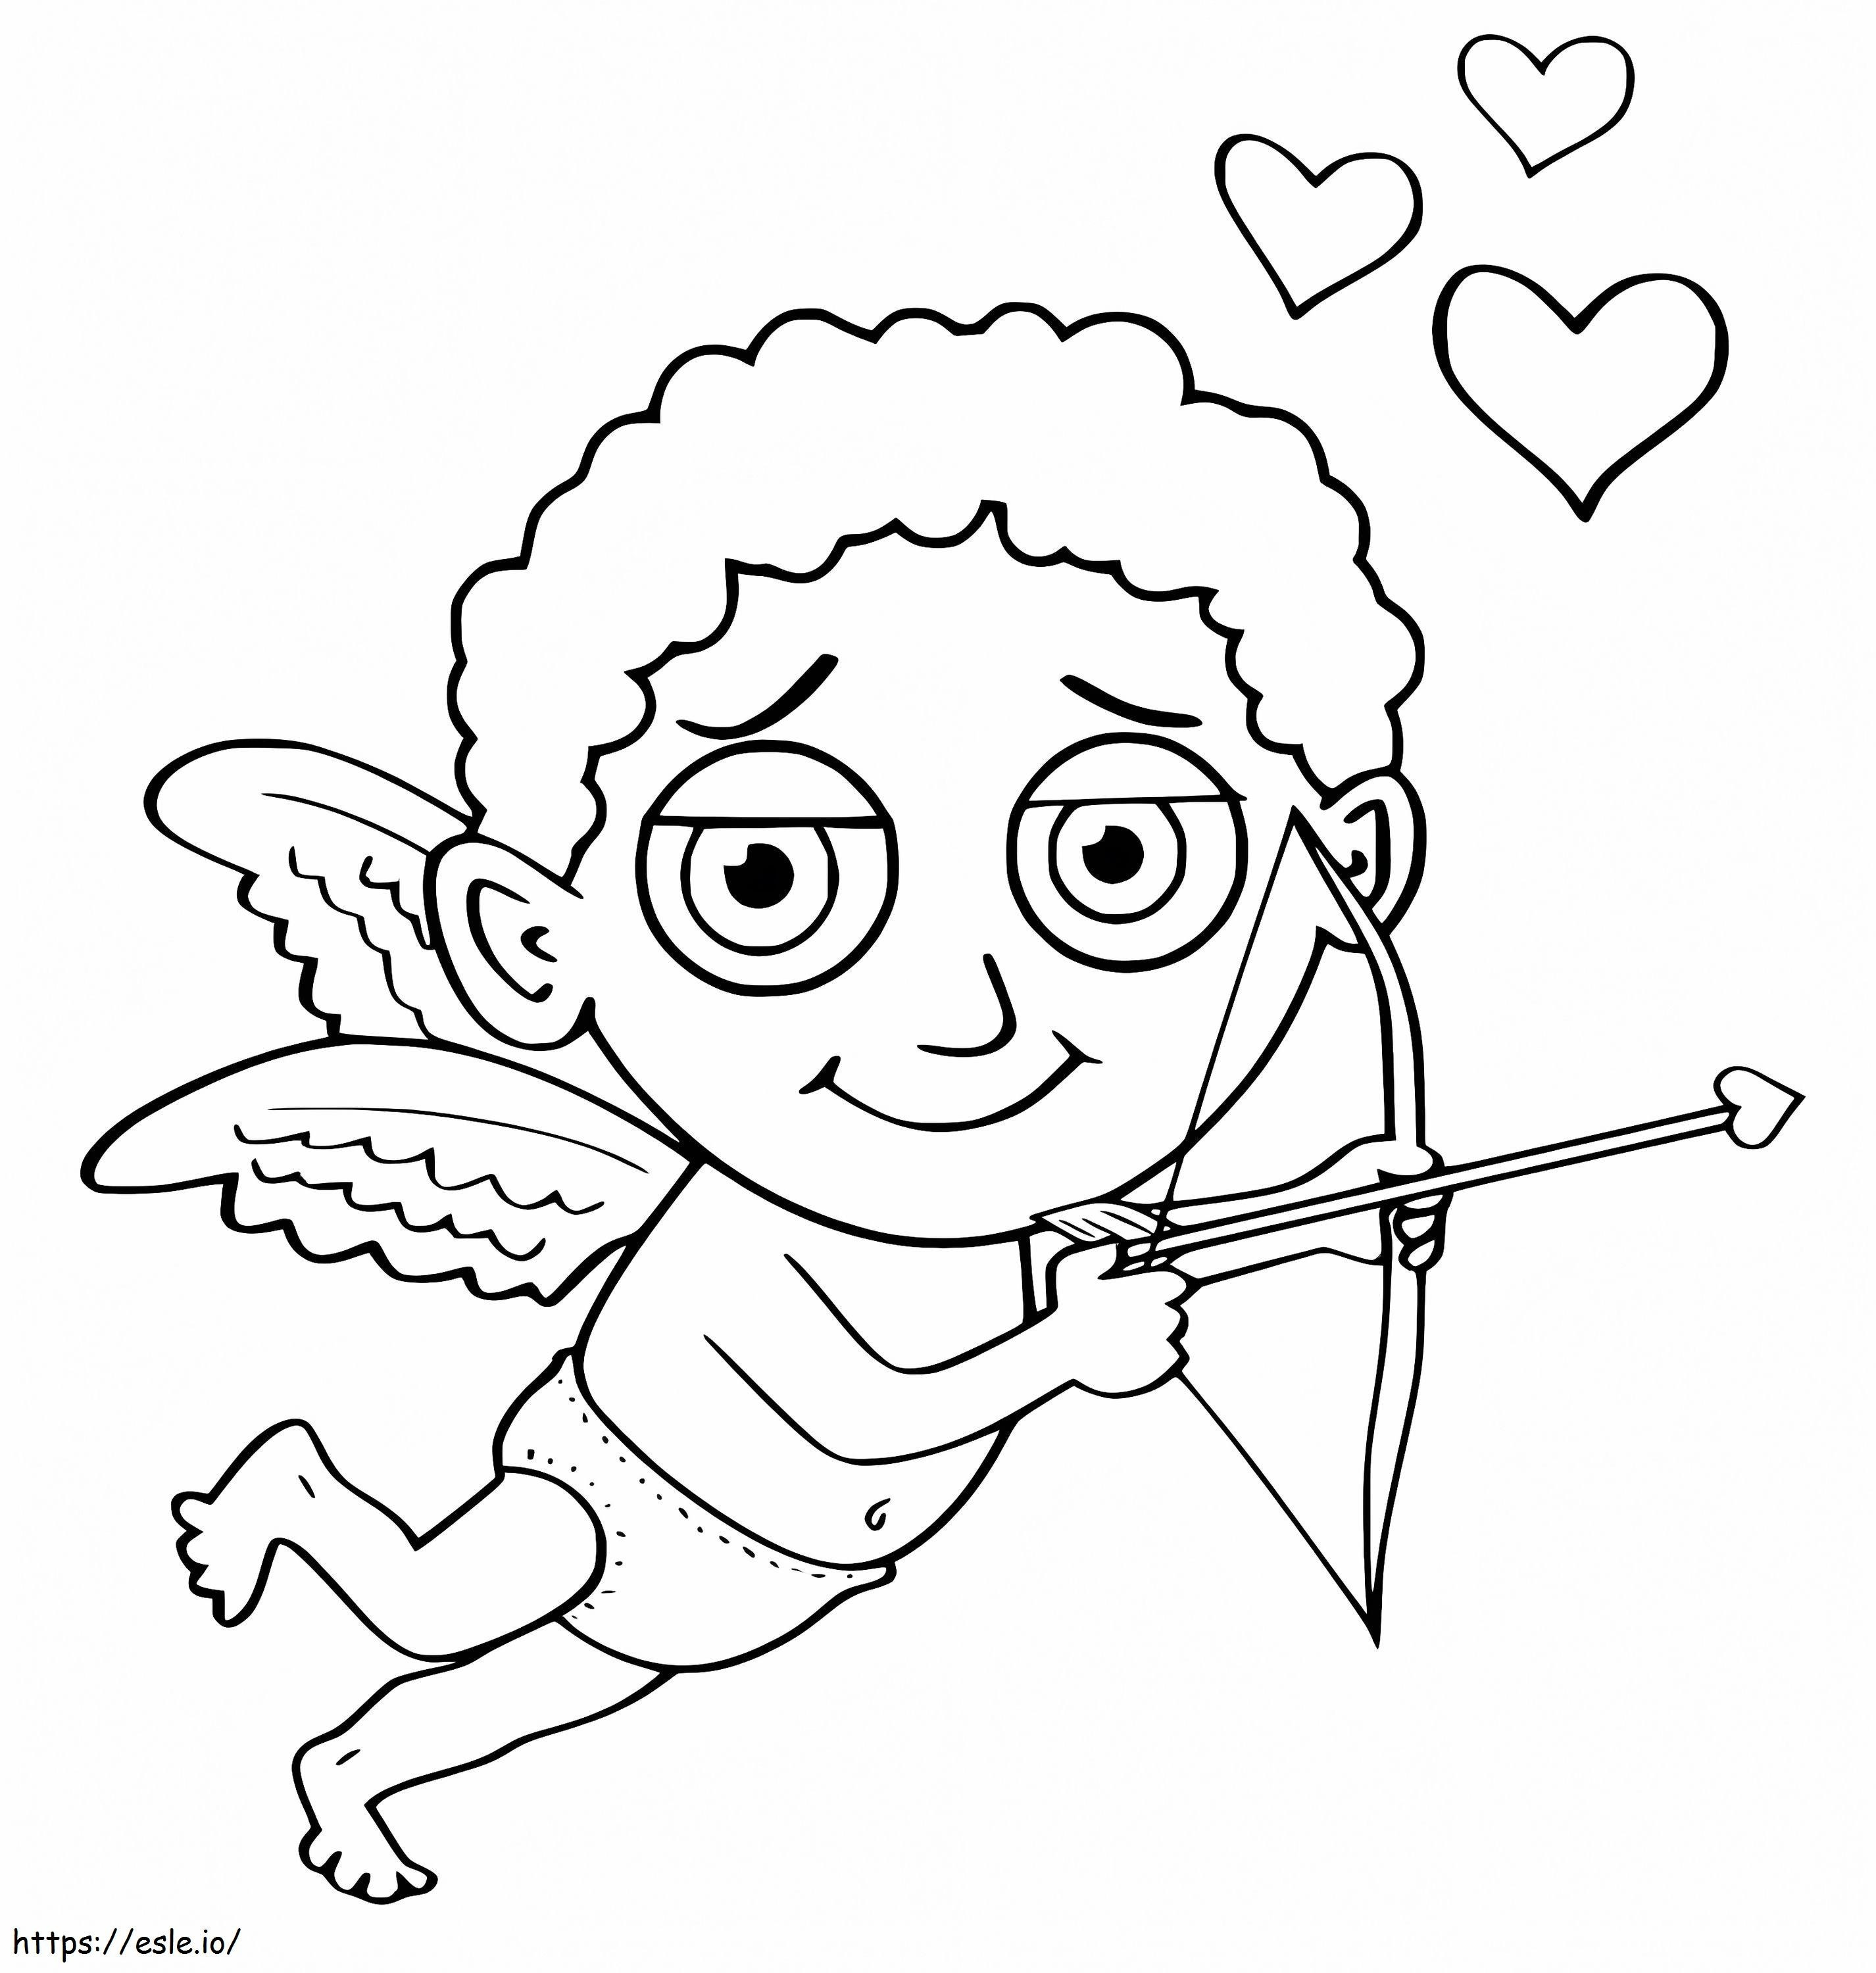 Menino Cupido para colorir